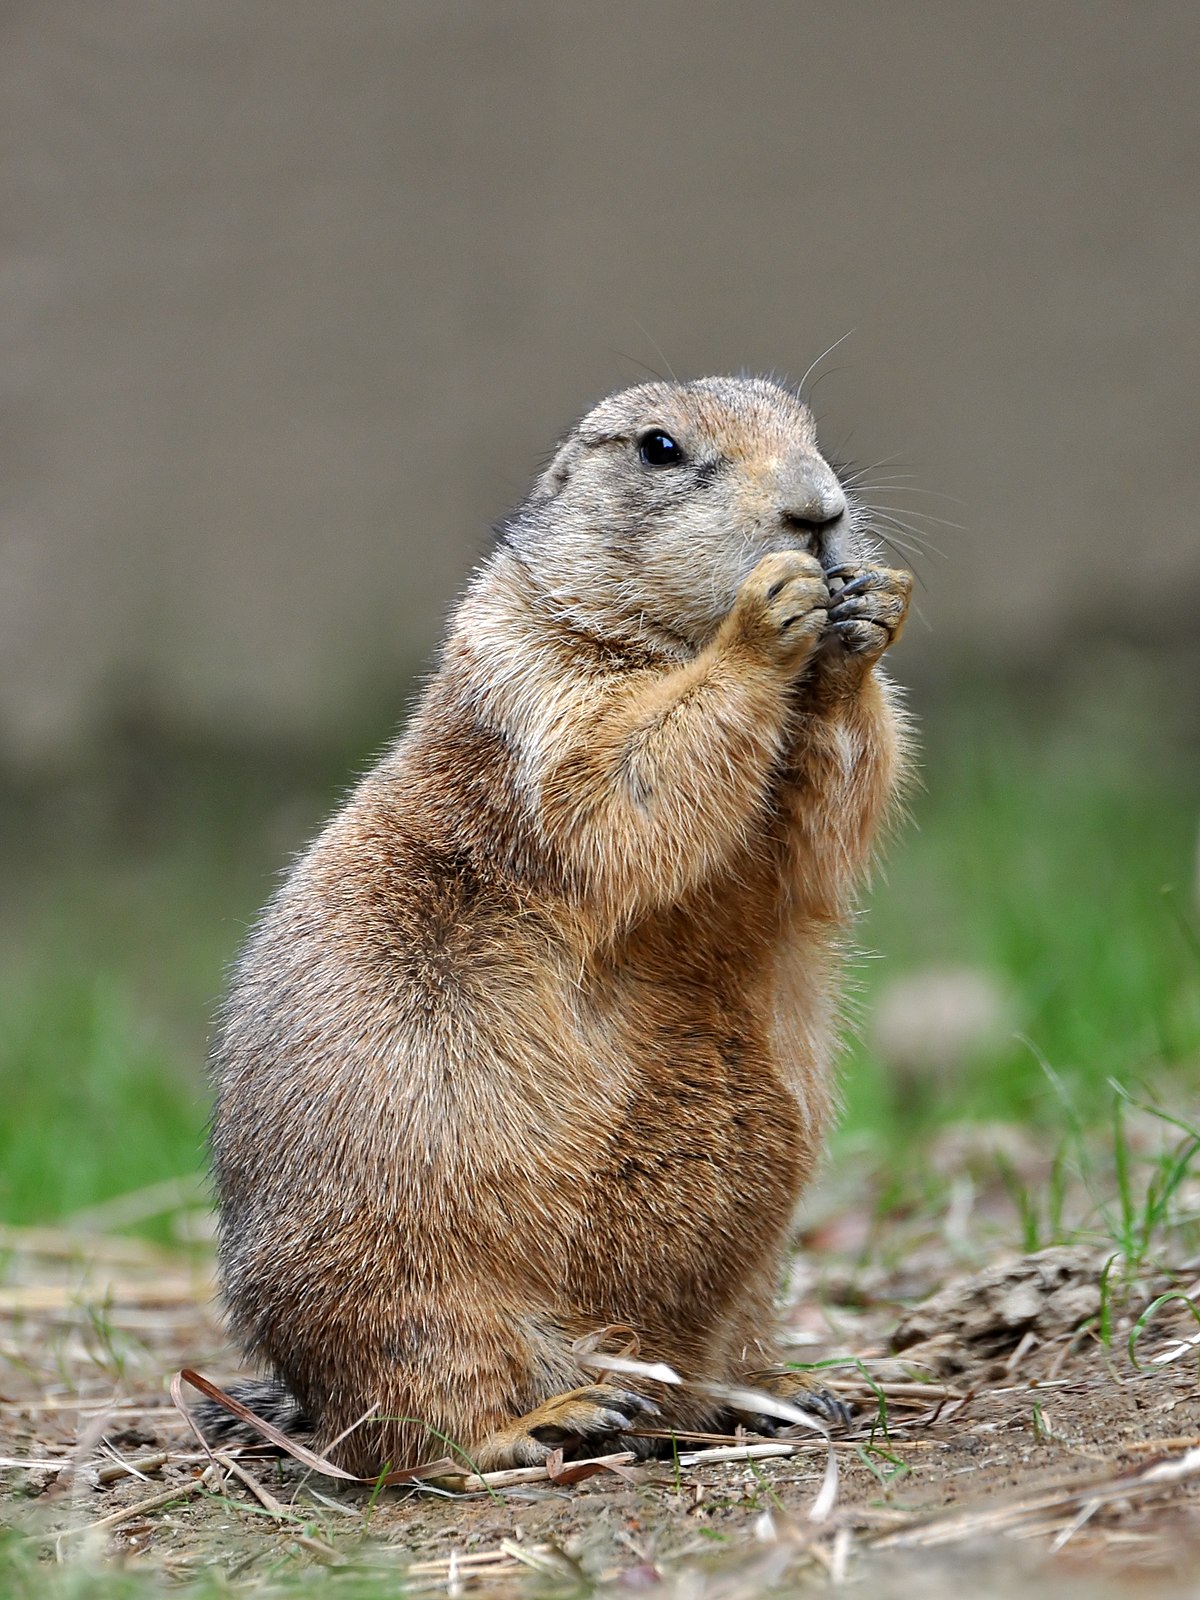 Category:Ground Squirrels | NatureRules1 Wiki | Fandom